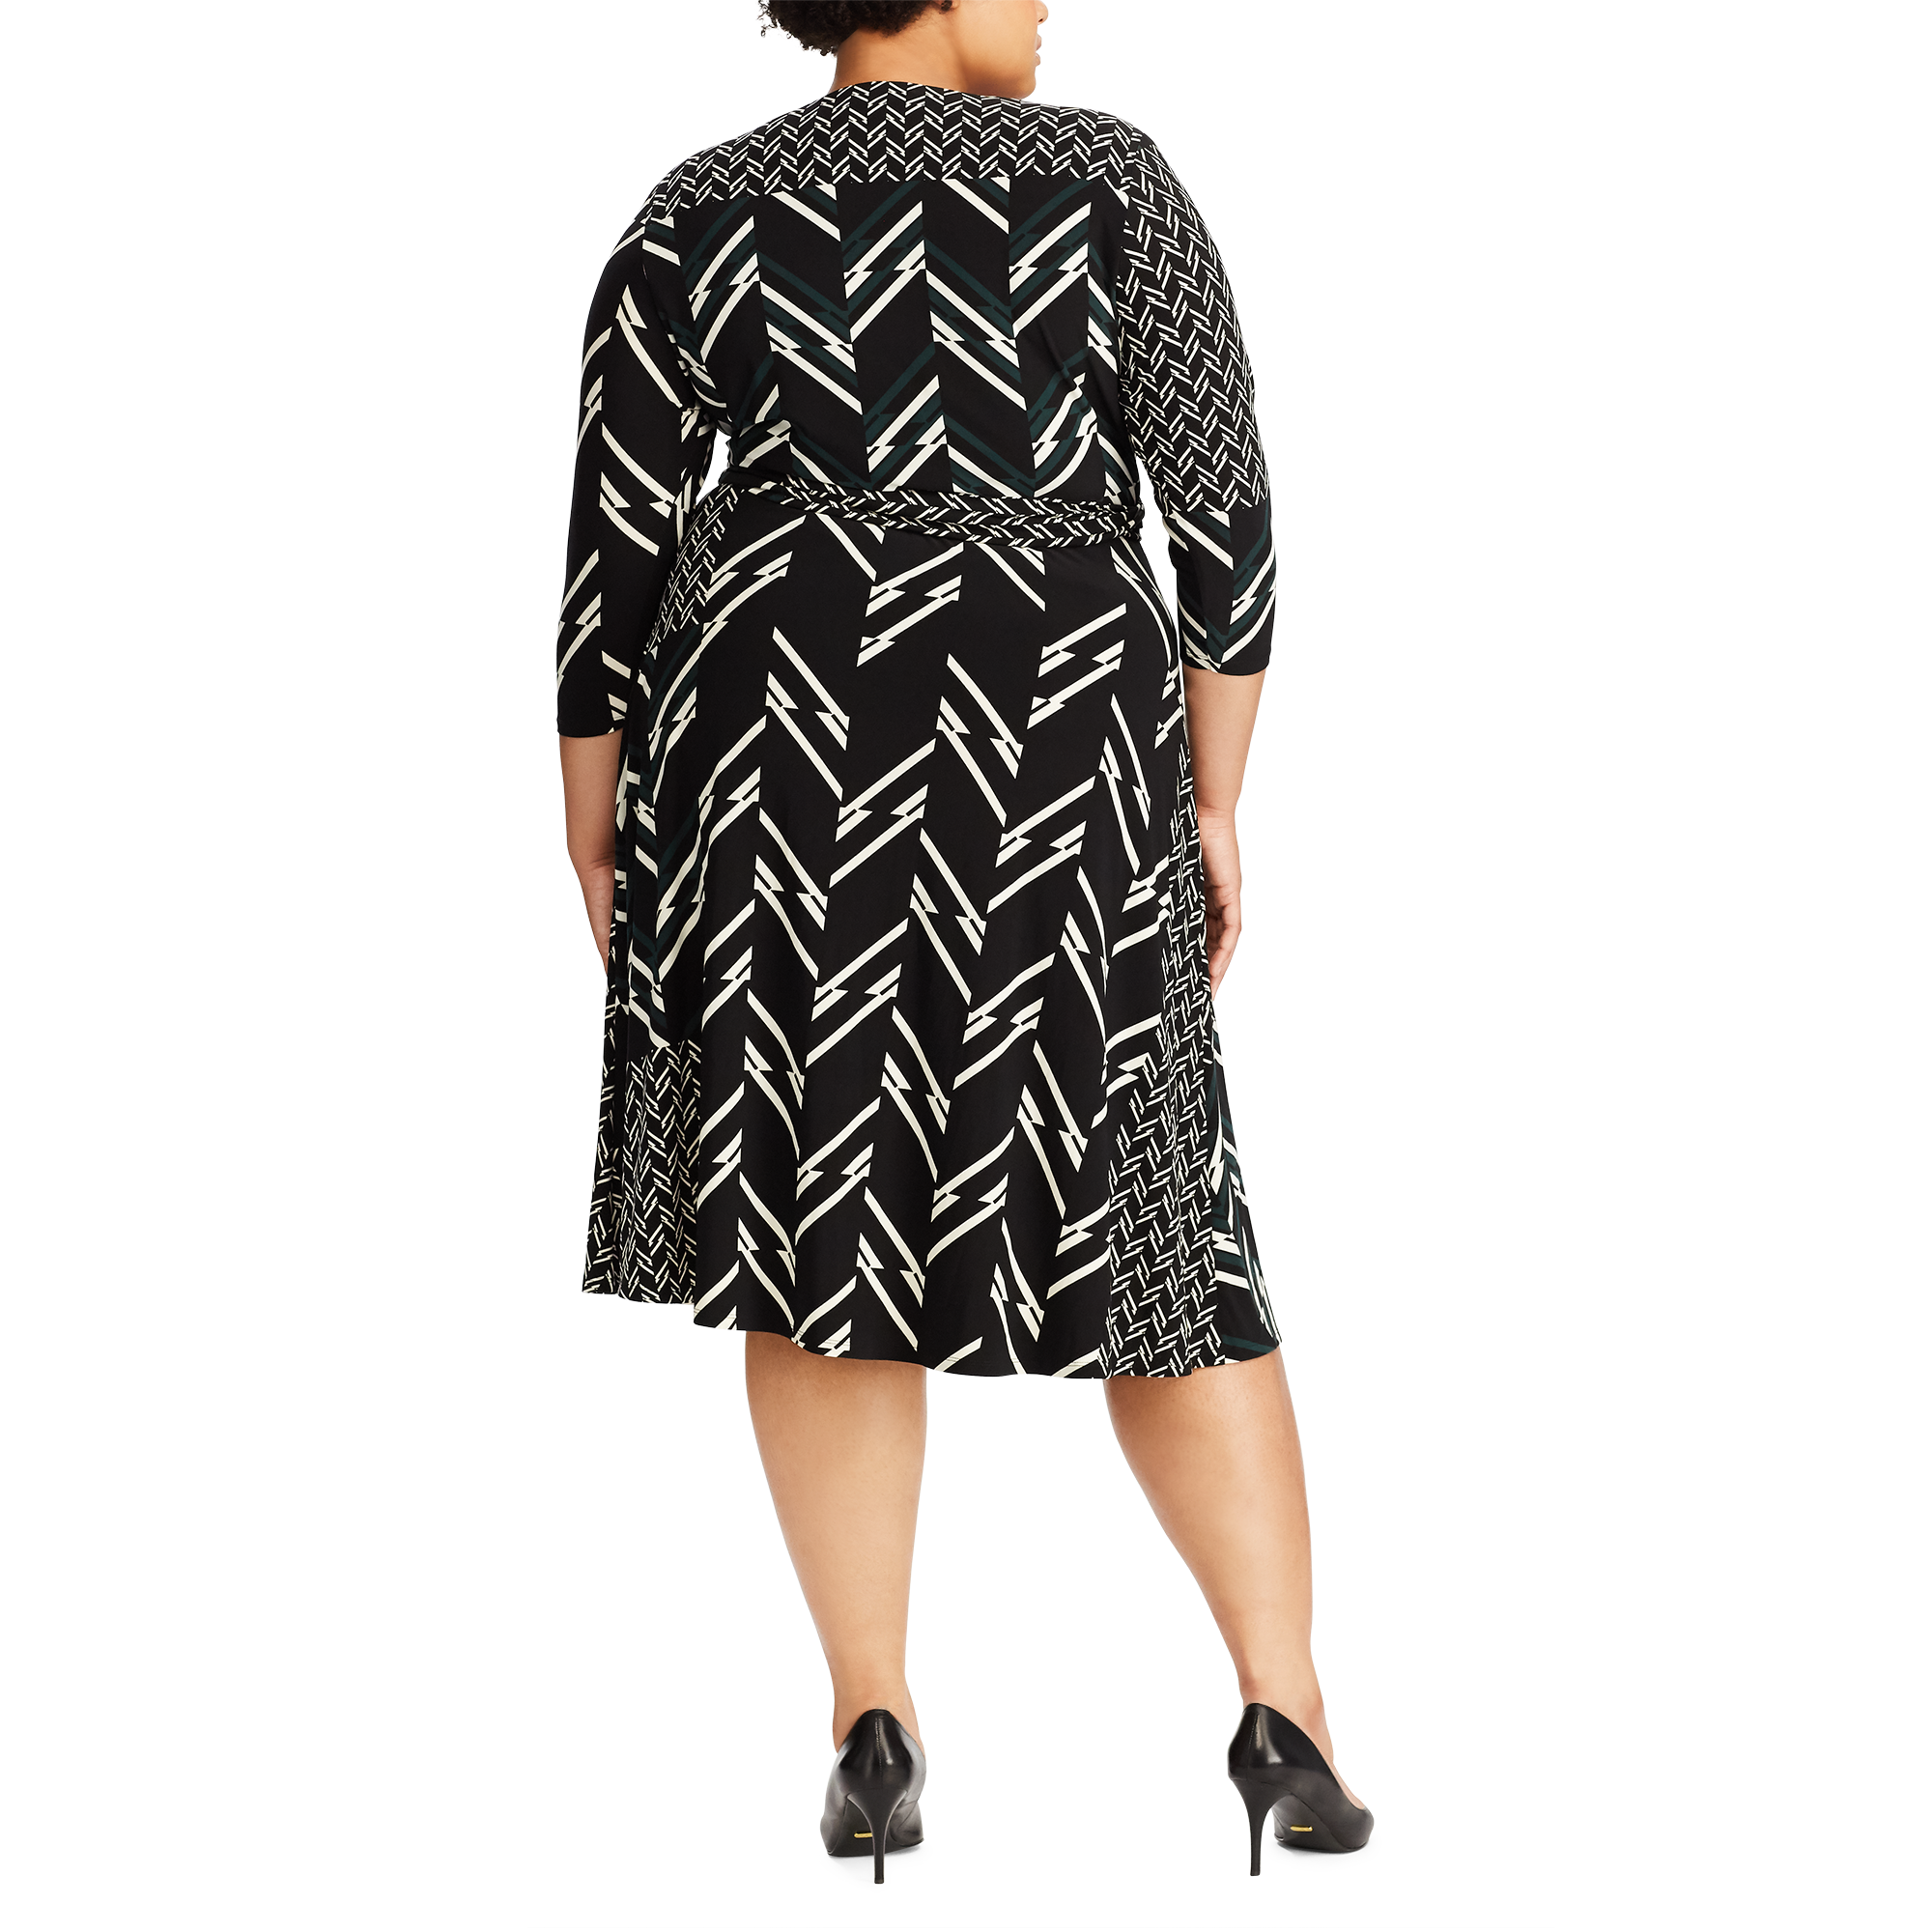 Ralph Lauren Multi-Print Jersey Dress. 4